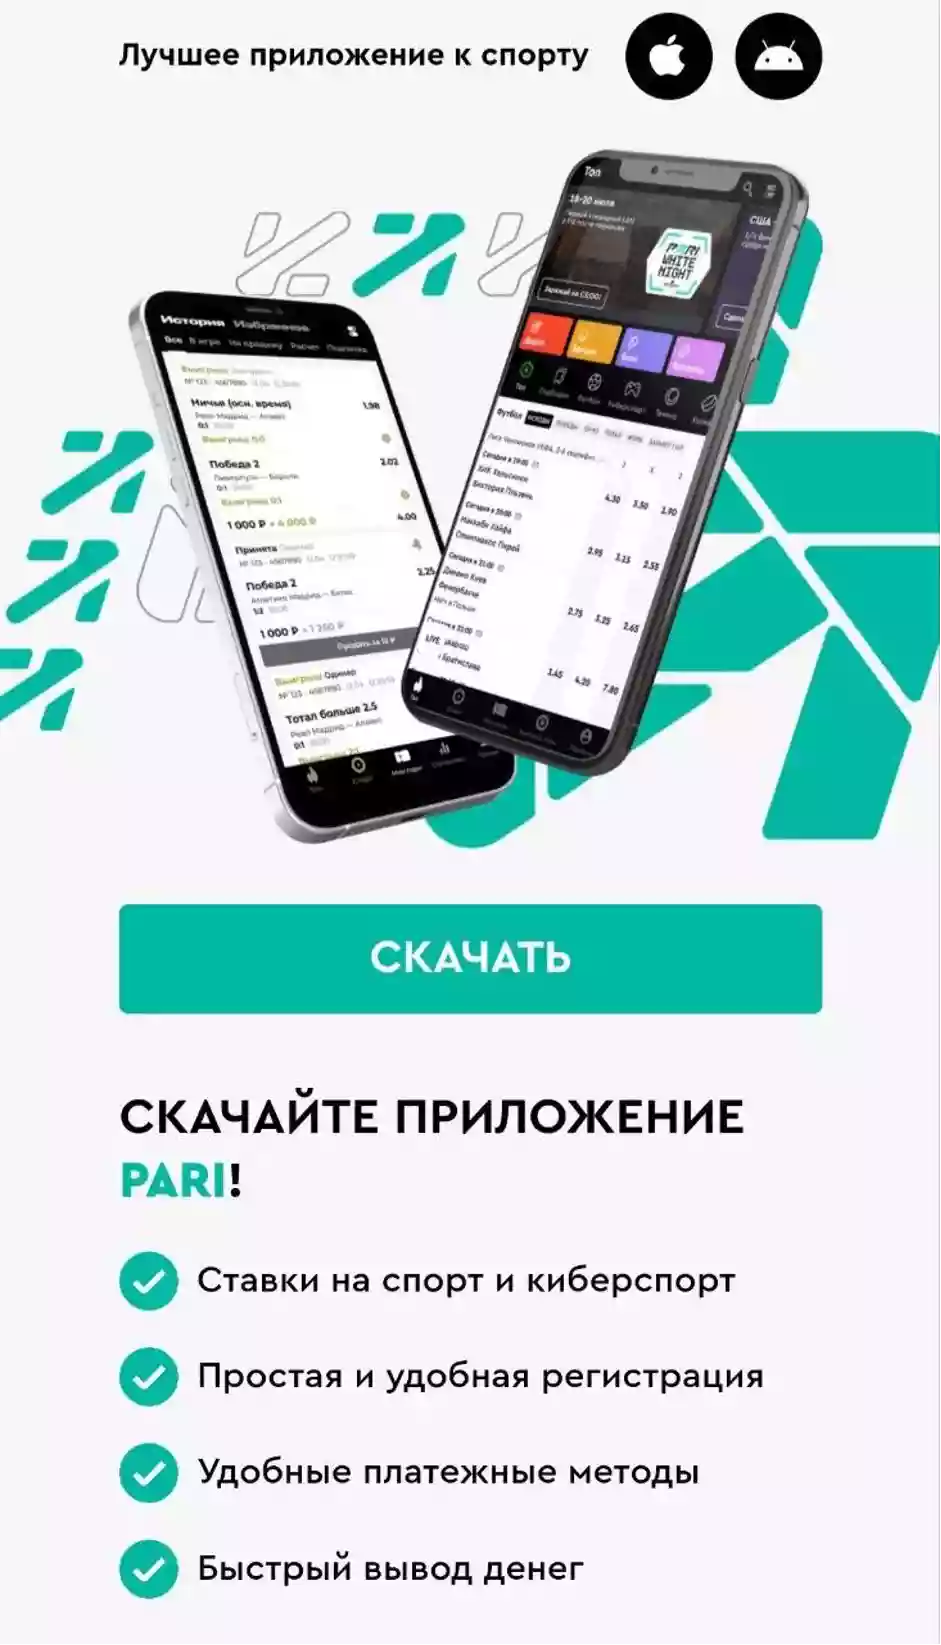 Приложение Pari на Android